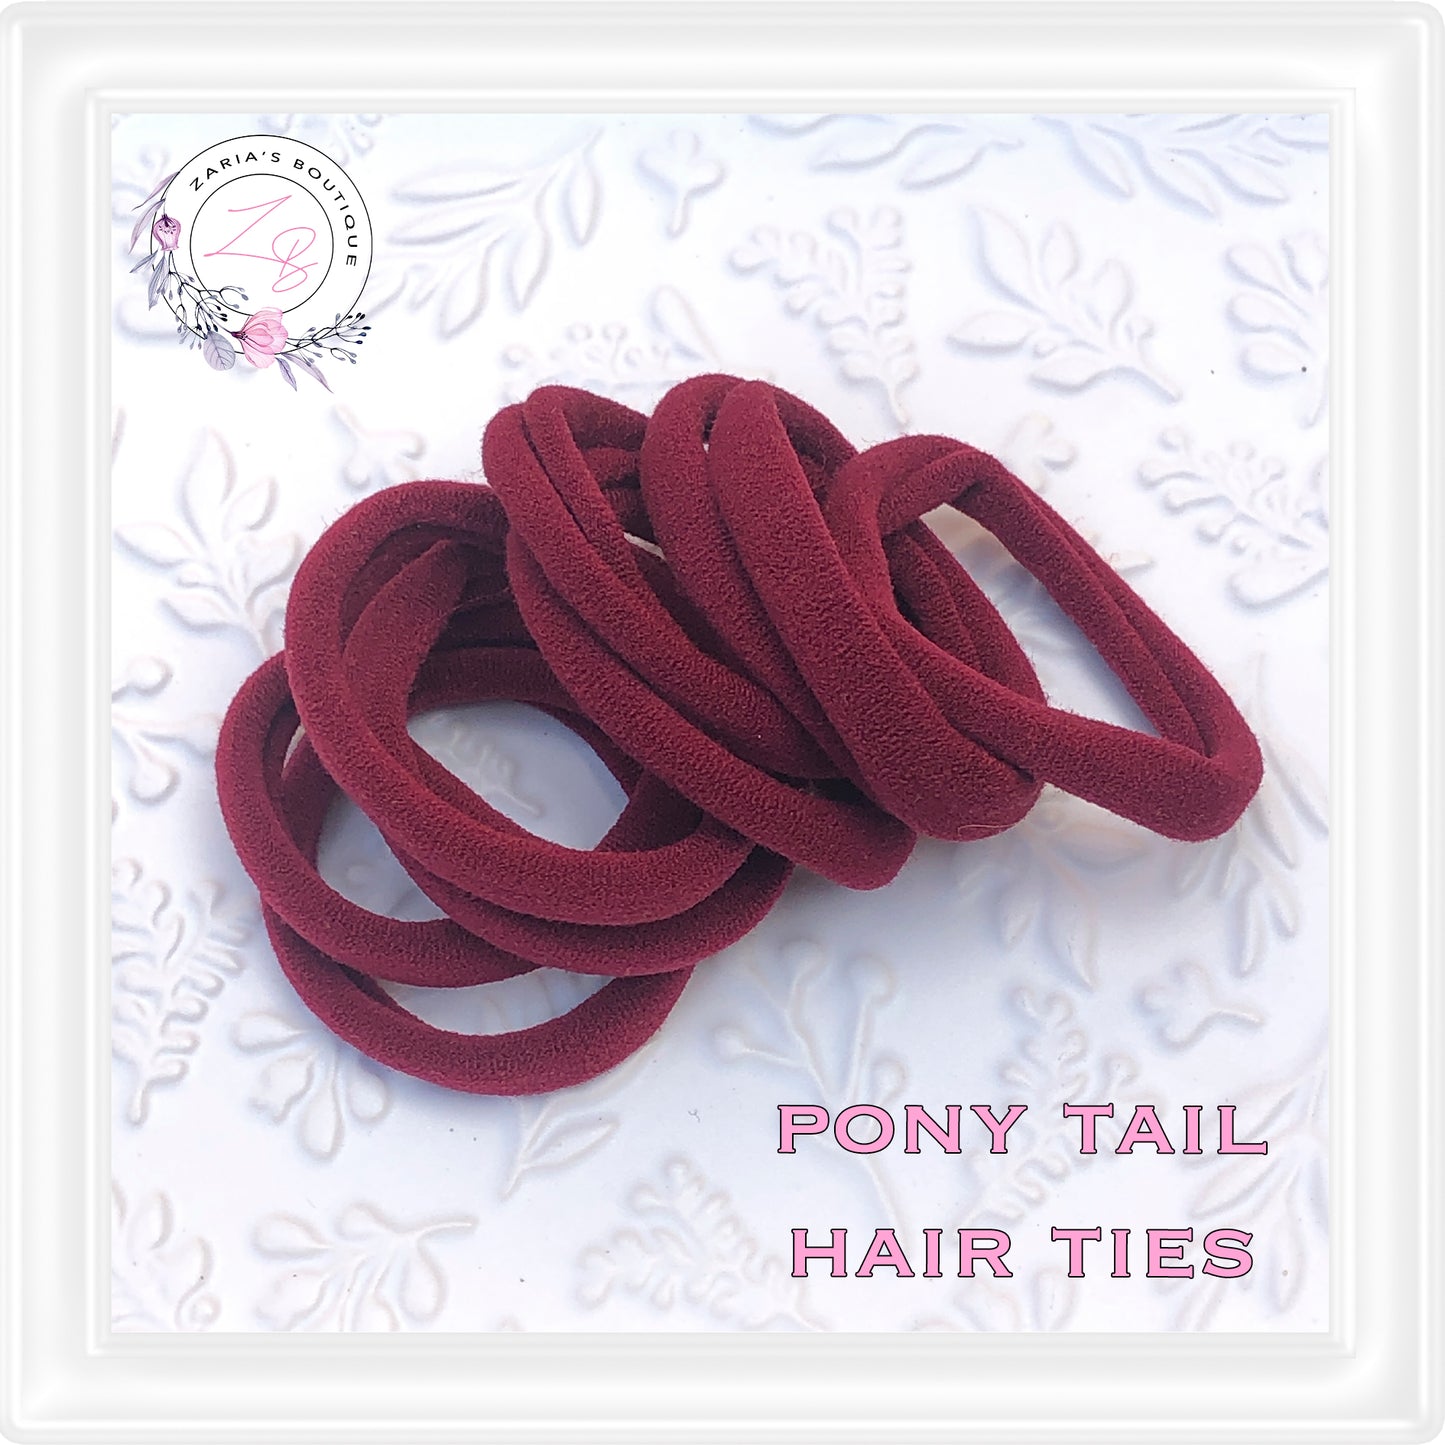 10 Nylon Ponytail Hair Bands ~ Burgundy/Maroon